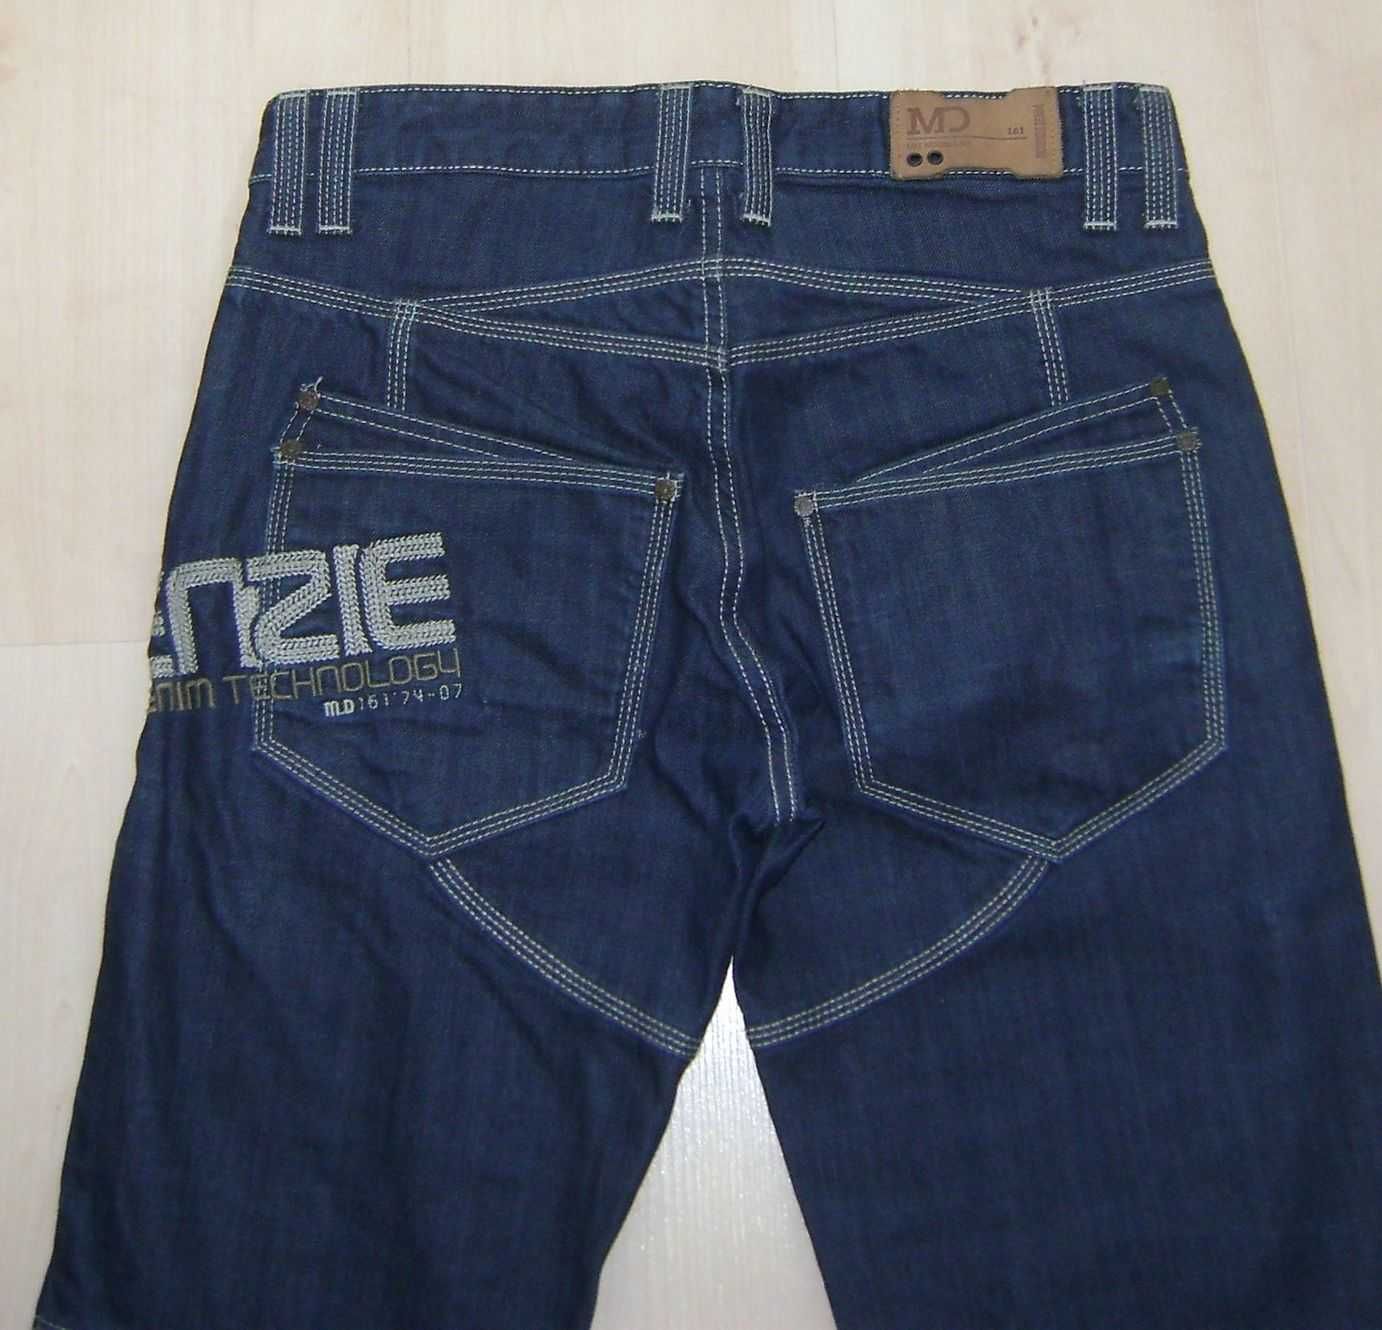 JAK NOWE spodnie jeans h&m roz M W30 L32